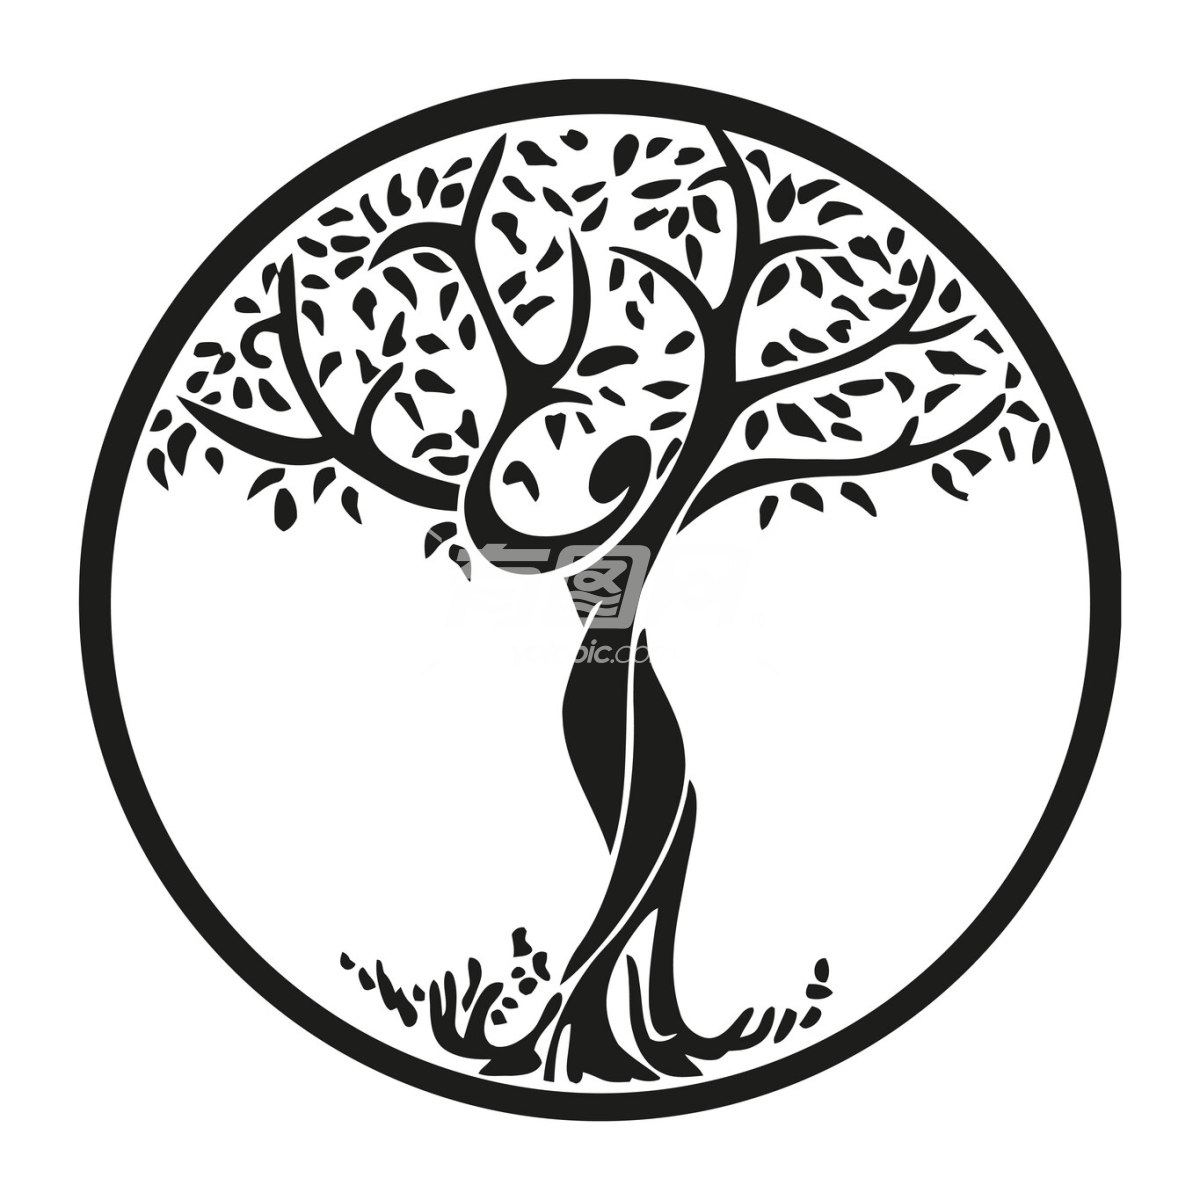 树剪影图案logo